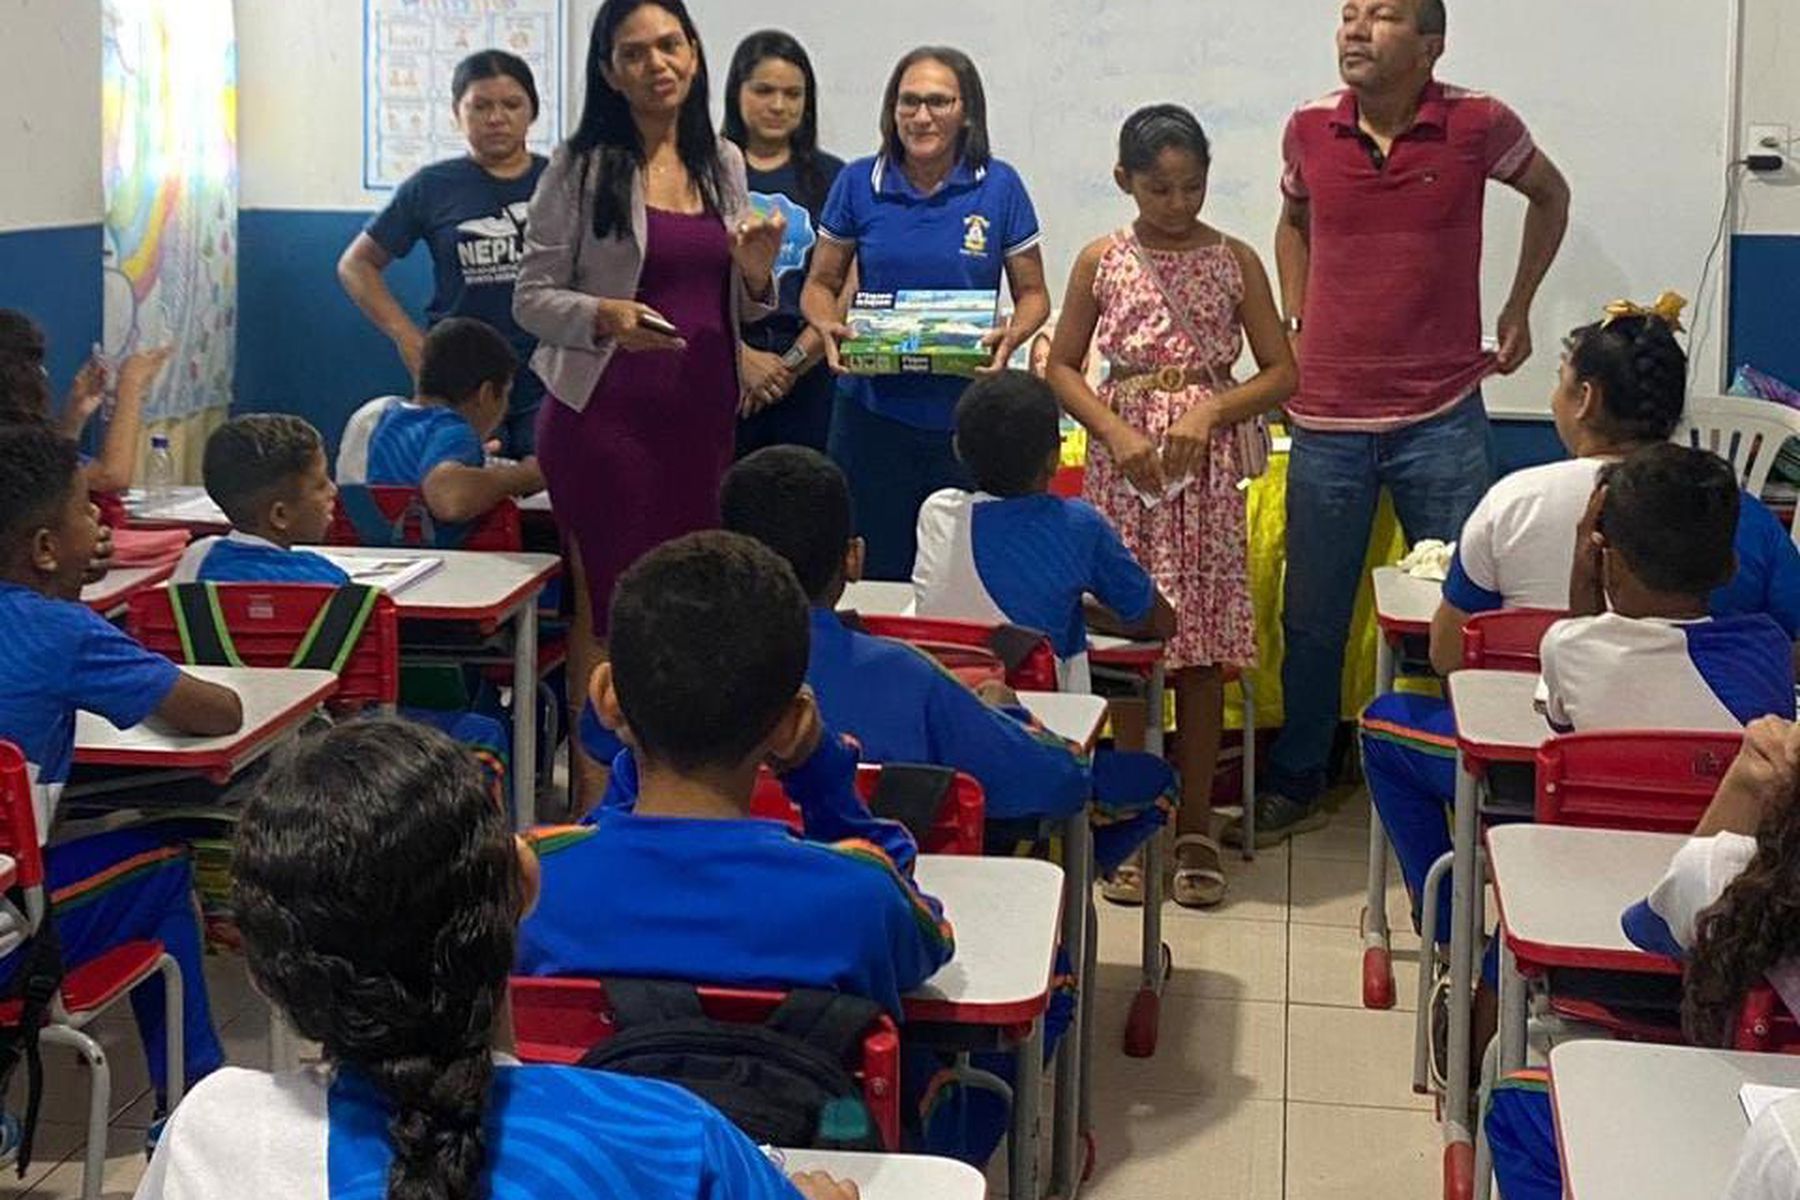 Sedes realiza ciclo de formação profissional do Selo Unicef na Escola João Silva